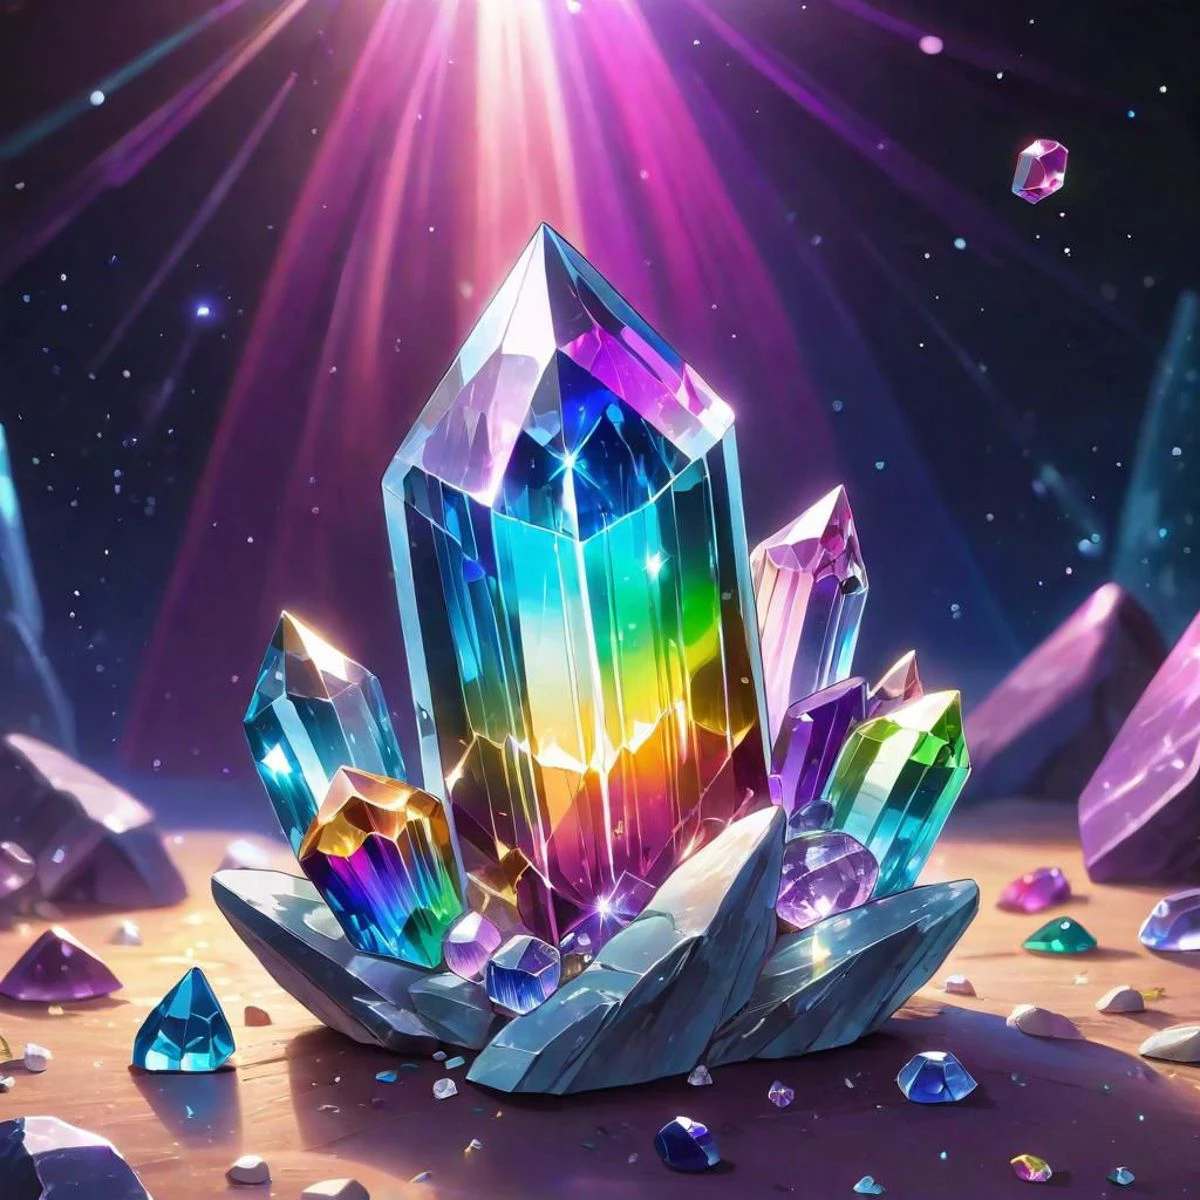 Волшебные мистические кристаллы, парящие в воздухе, кристаллы в космосе, кристаллы, наполненные энергией, электрические хрустальные камни, электричество, глубокая огромная галактика, полная радужных кристаллов, Красочные кристаллы, мистическая вселенная, необработанные кристаллы галактики, цвета радуги, светящаяся аура вокруг кристалла, блестящие хрустальные камни, кристаллы внутри кристаллов, искрящаяся звездная пыль, высокое качество, высокое разрешение, шедевр, 4k, фотография, резкое фото, оказывать.